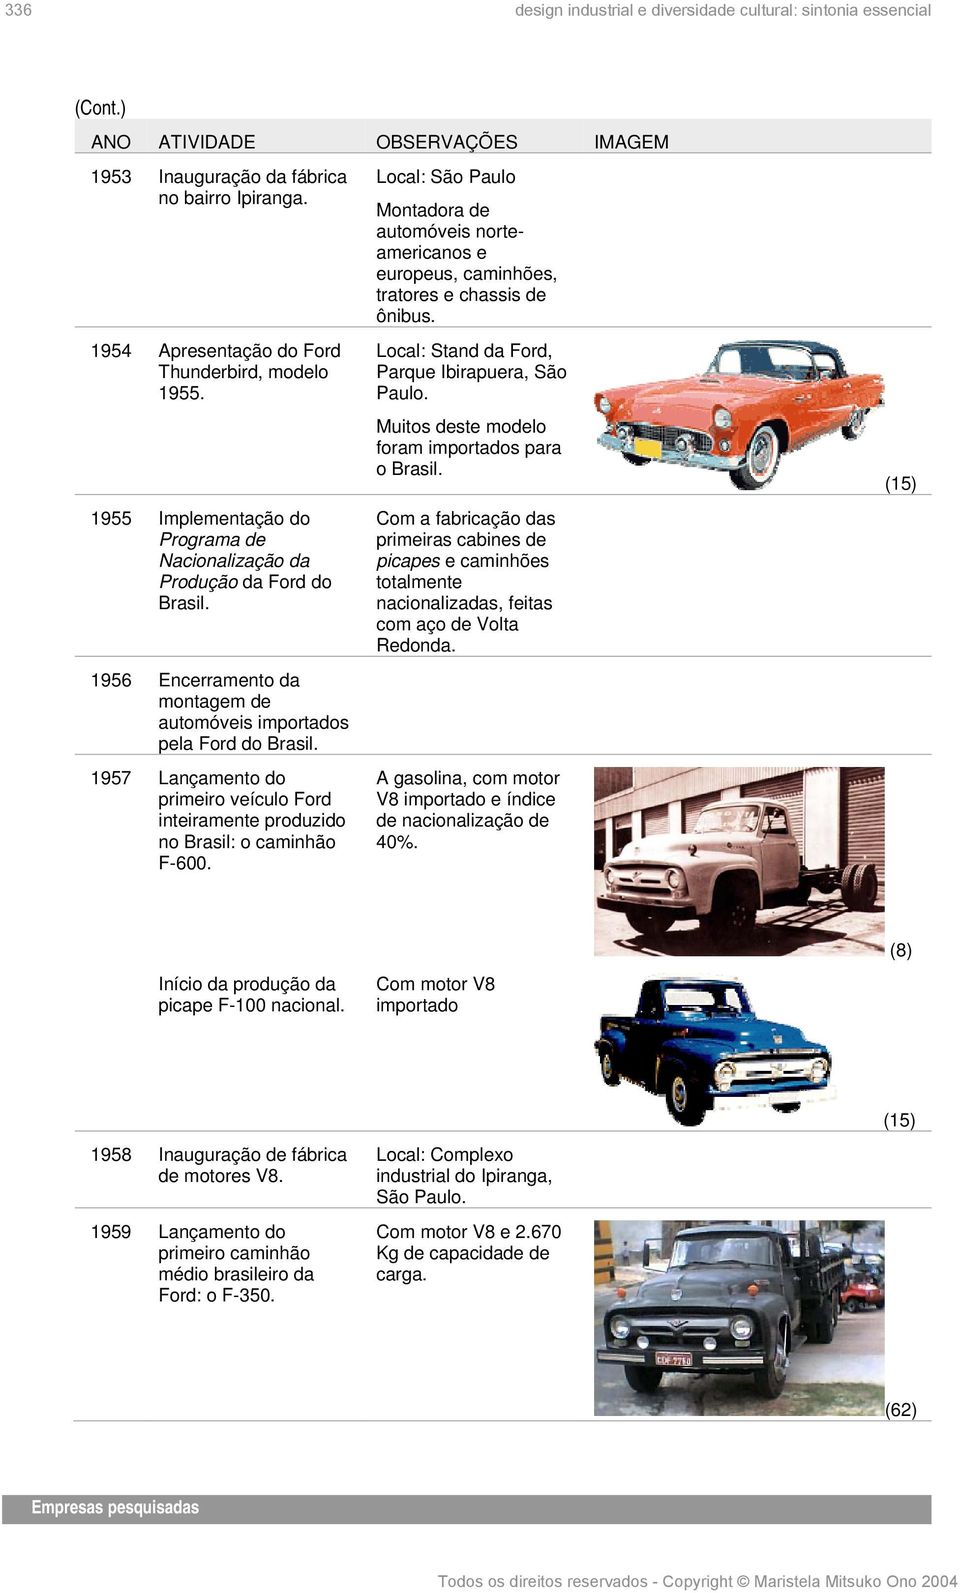 1957 Lançamento do primeiro veículo Ford inteiramente produzido no Brasil: o caminhão F-600.